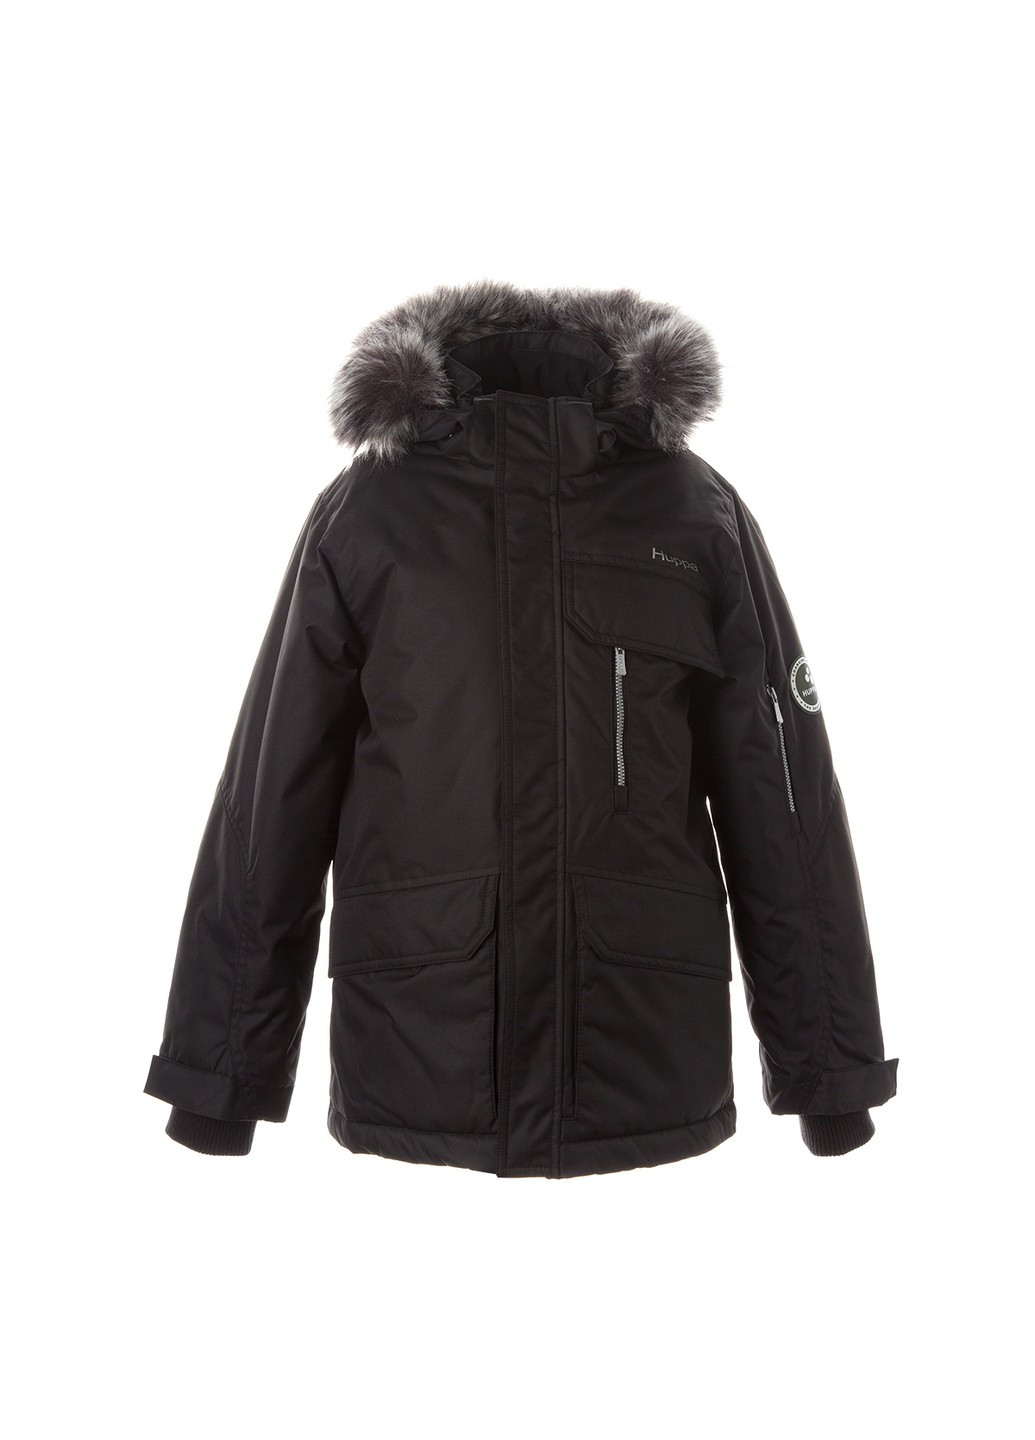 Черная зимняя куртка зимняя marten 2 Huppa